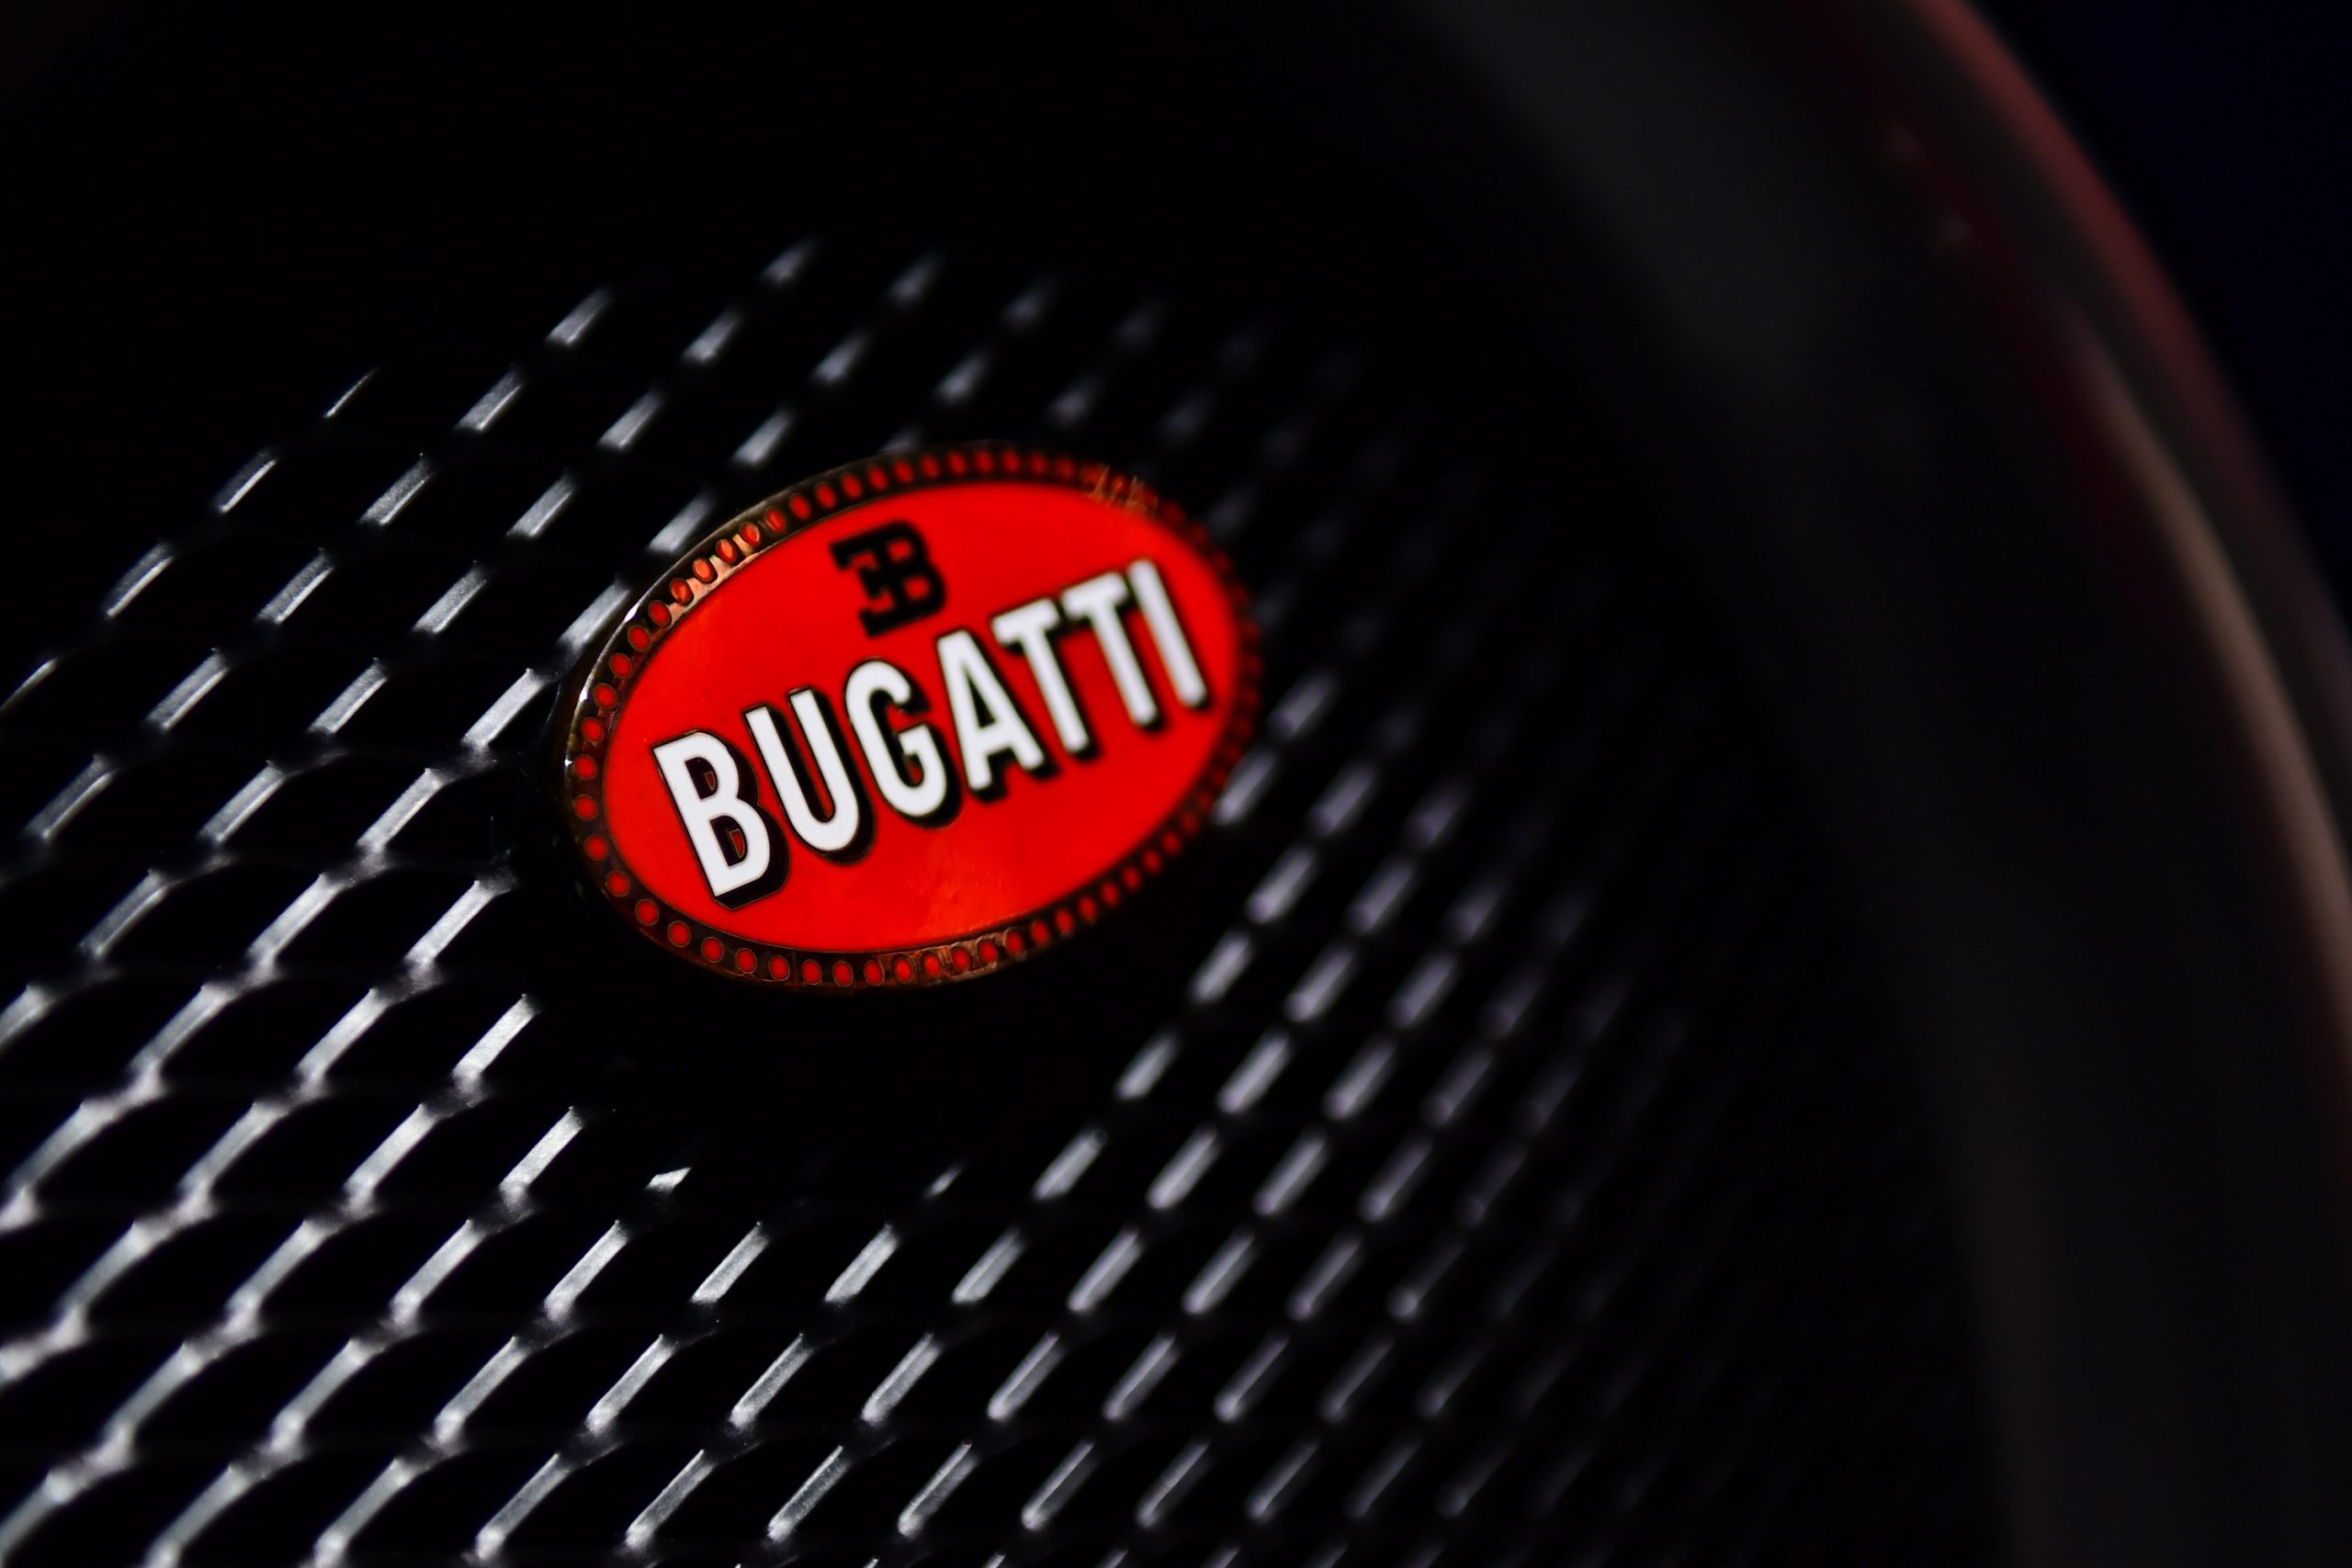 The Bugatti logo displayed on a Bugatti Chiron